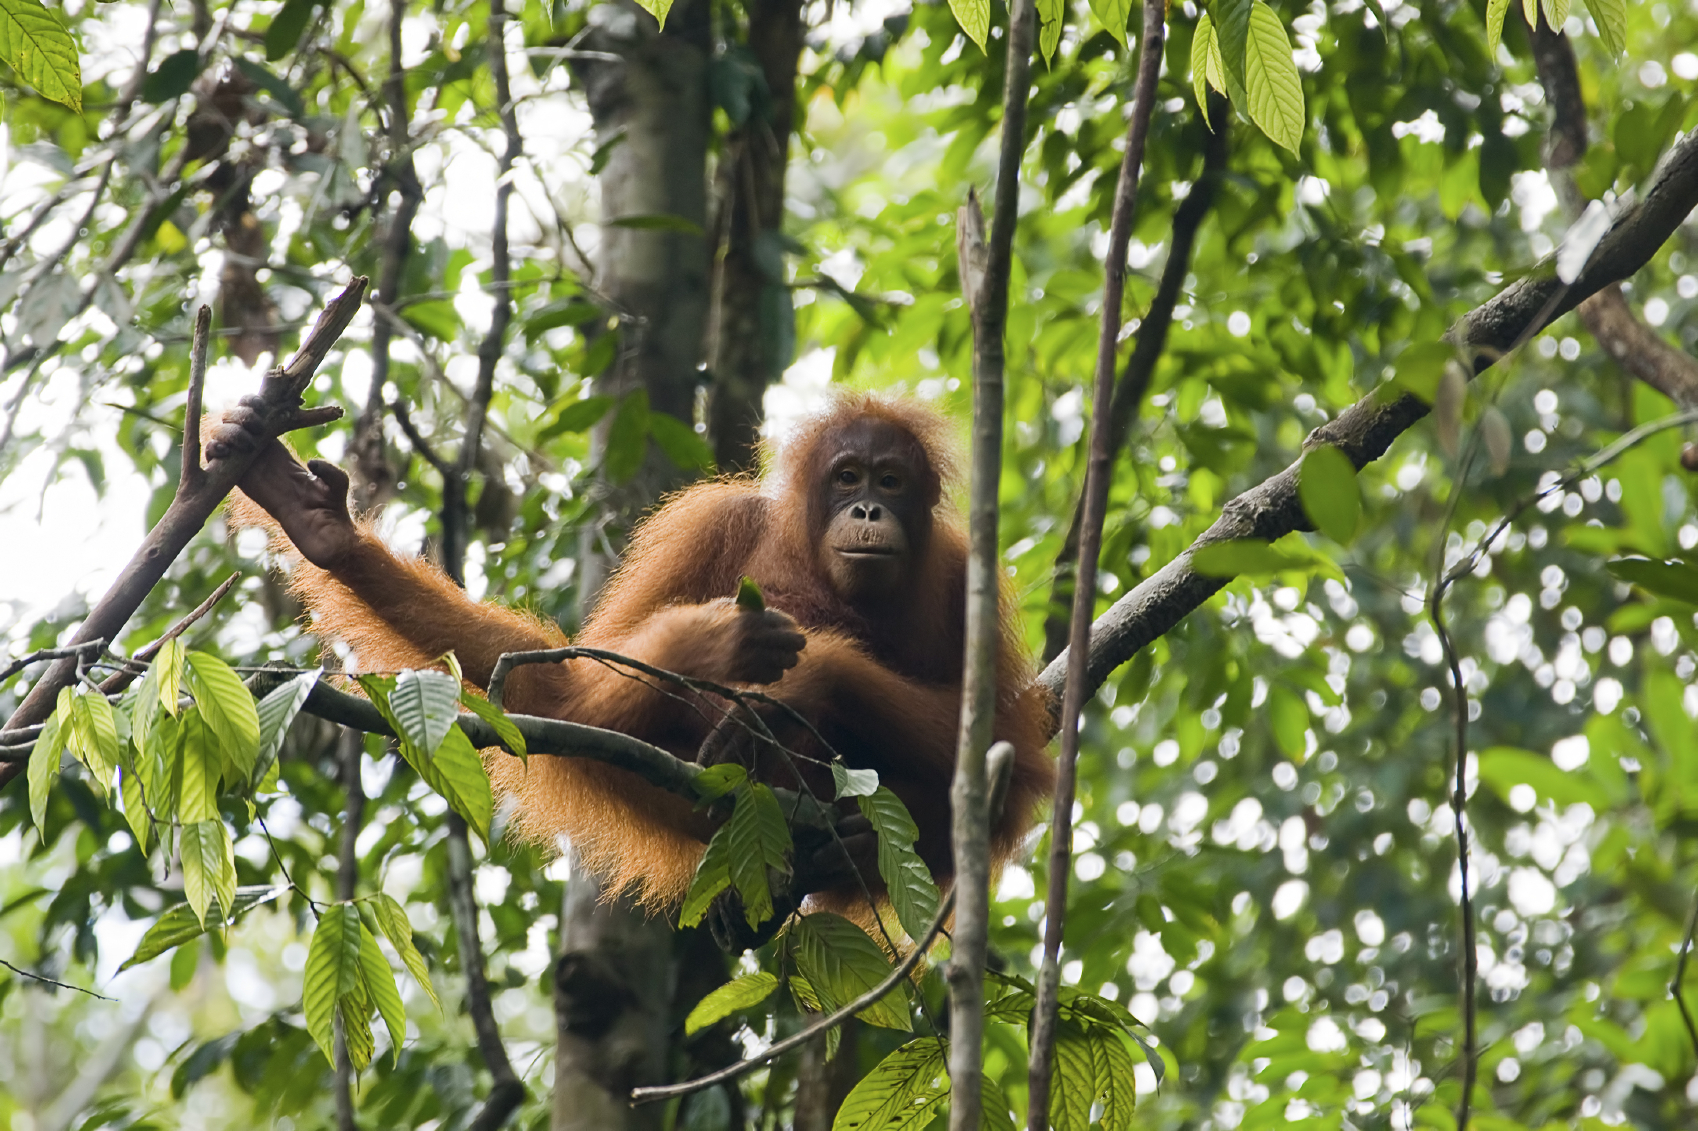 Orangutan seen in Indonesia